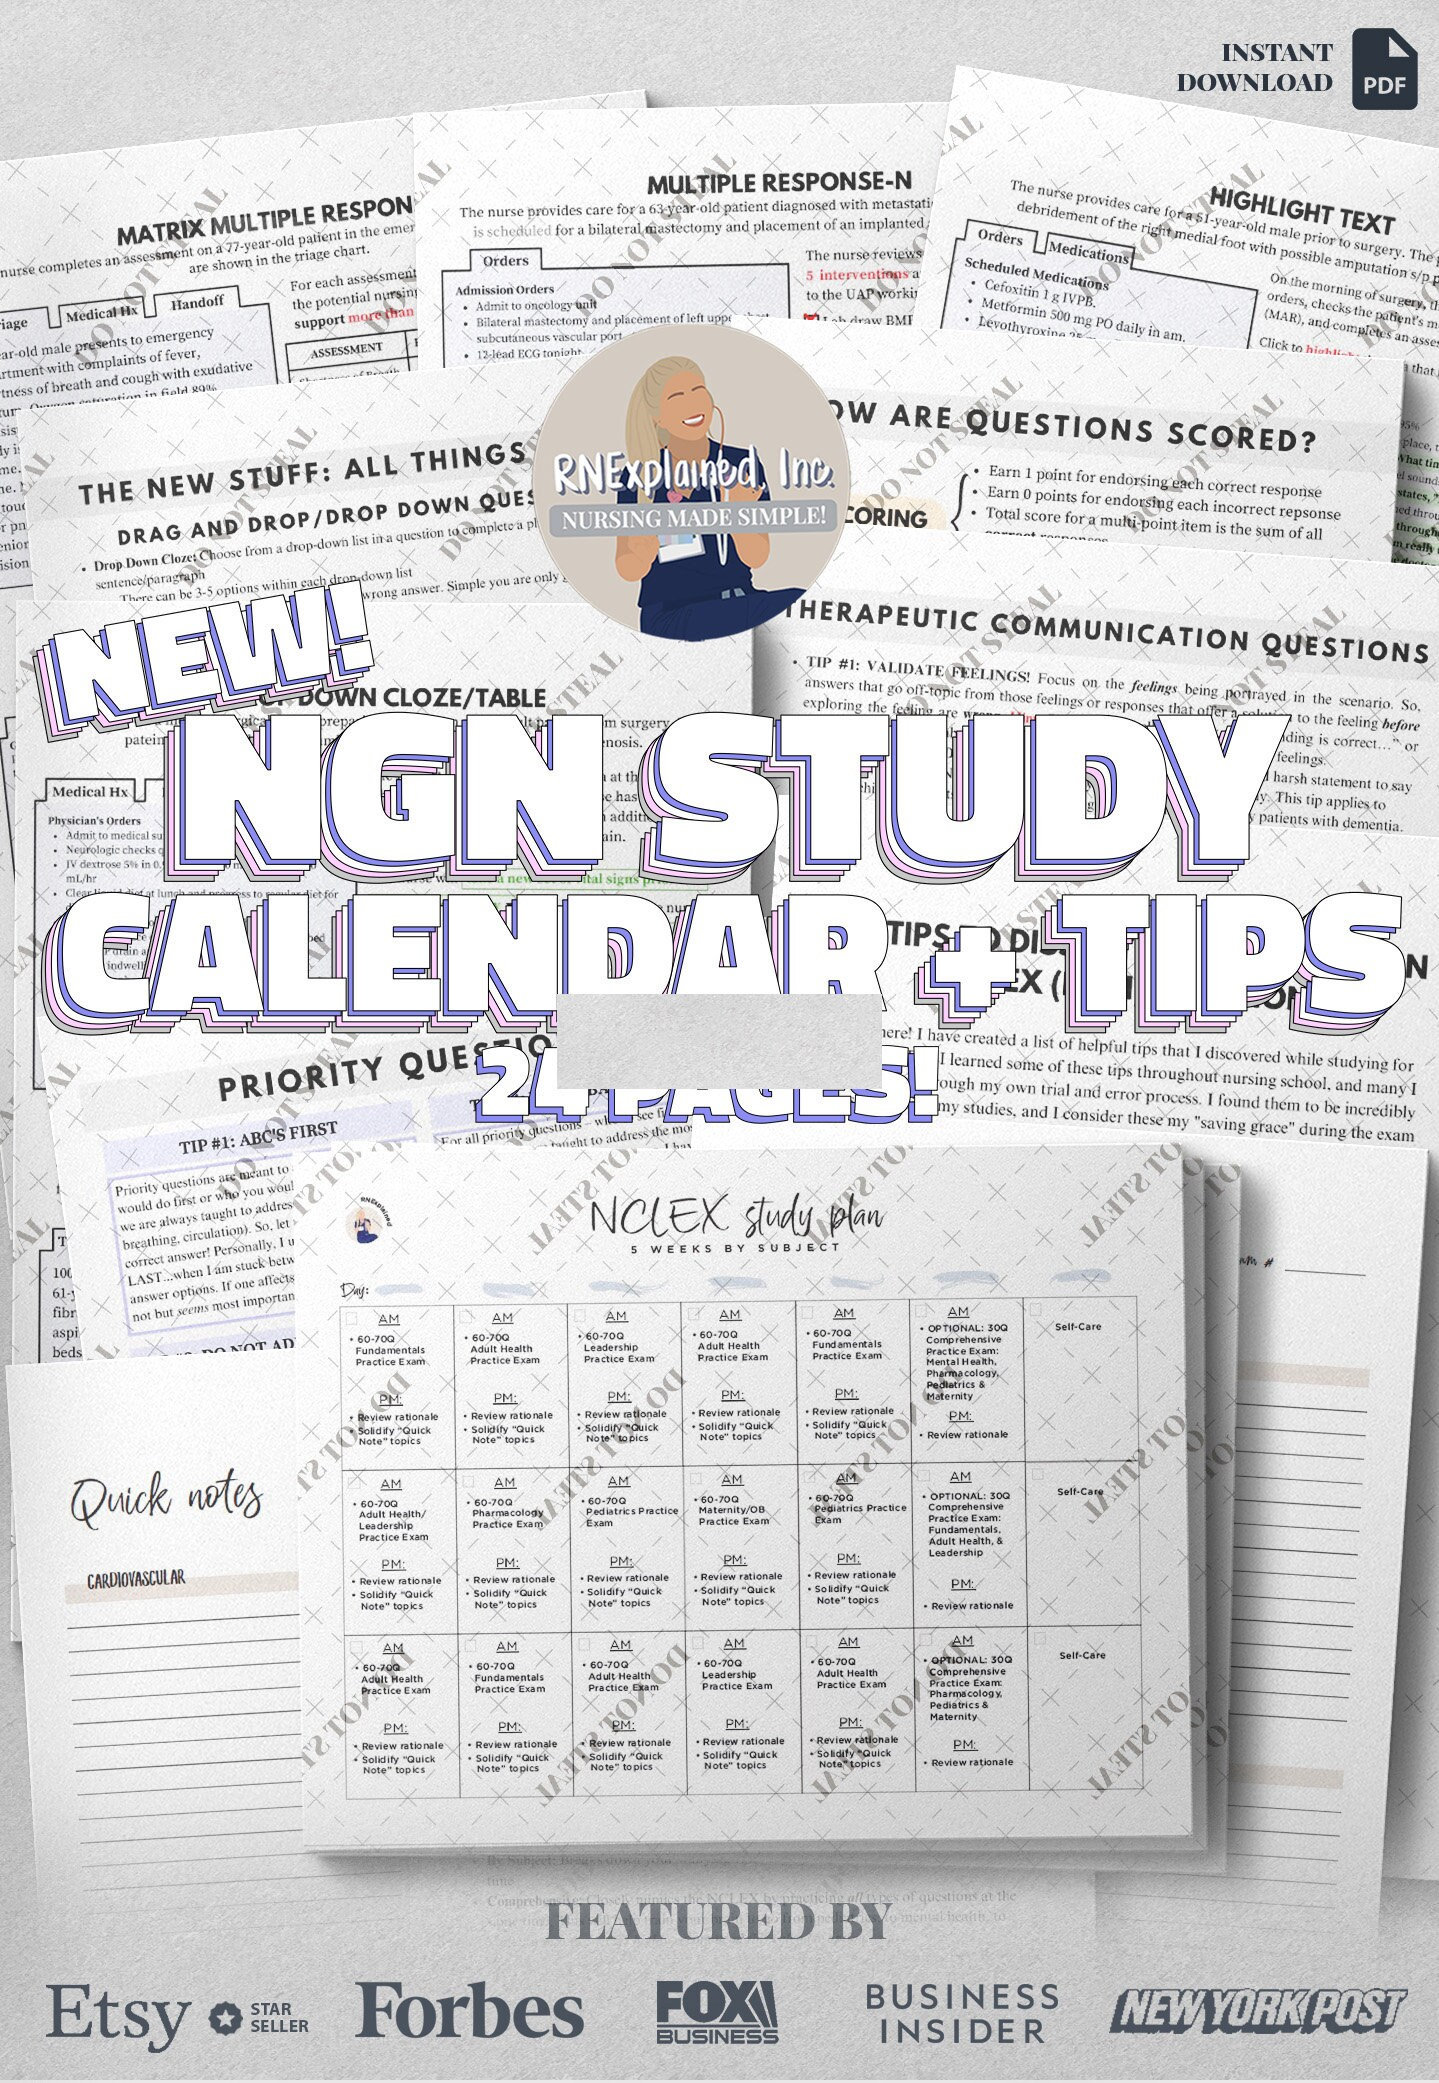 NEW 2023 NGN Study Calendar + Tips *NCLEX*